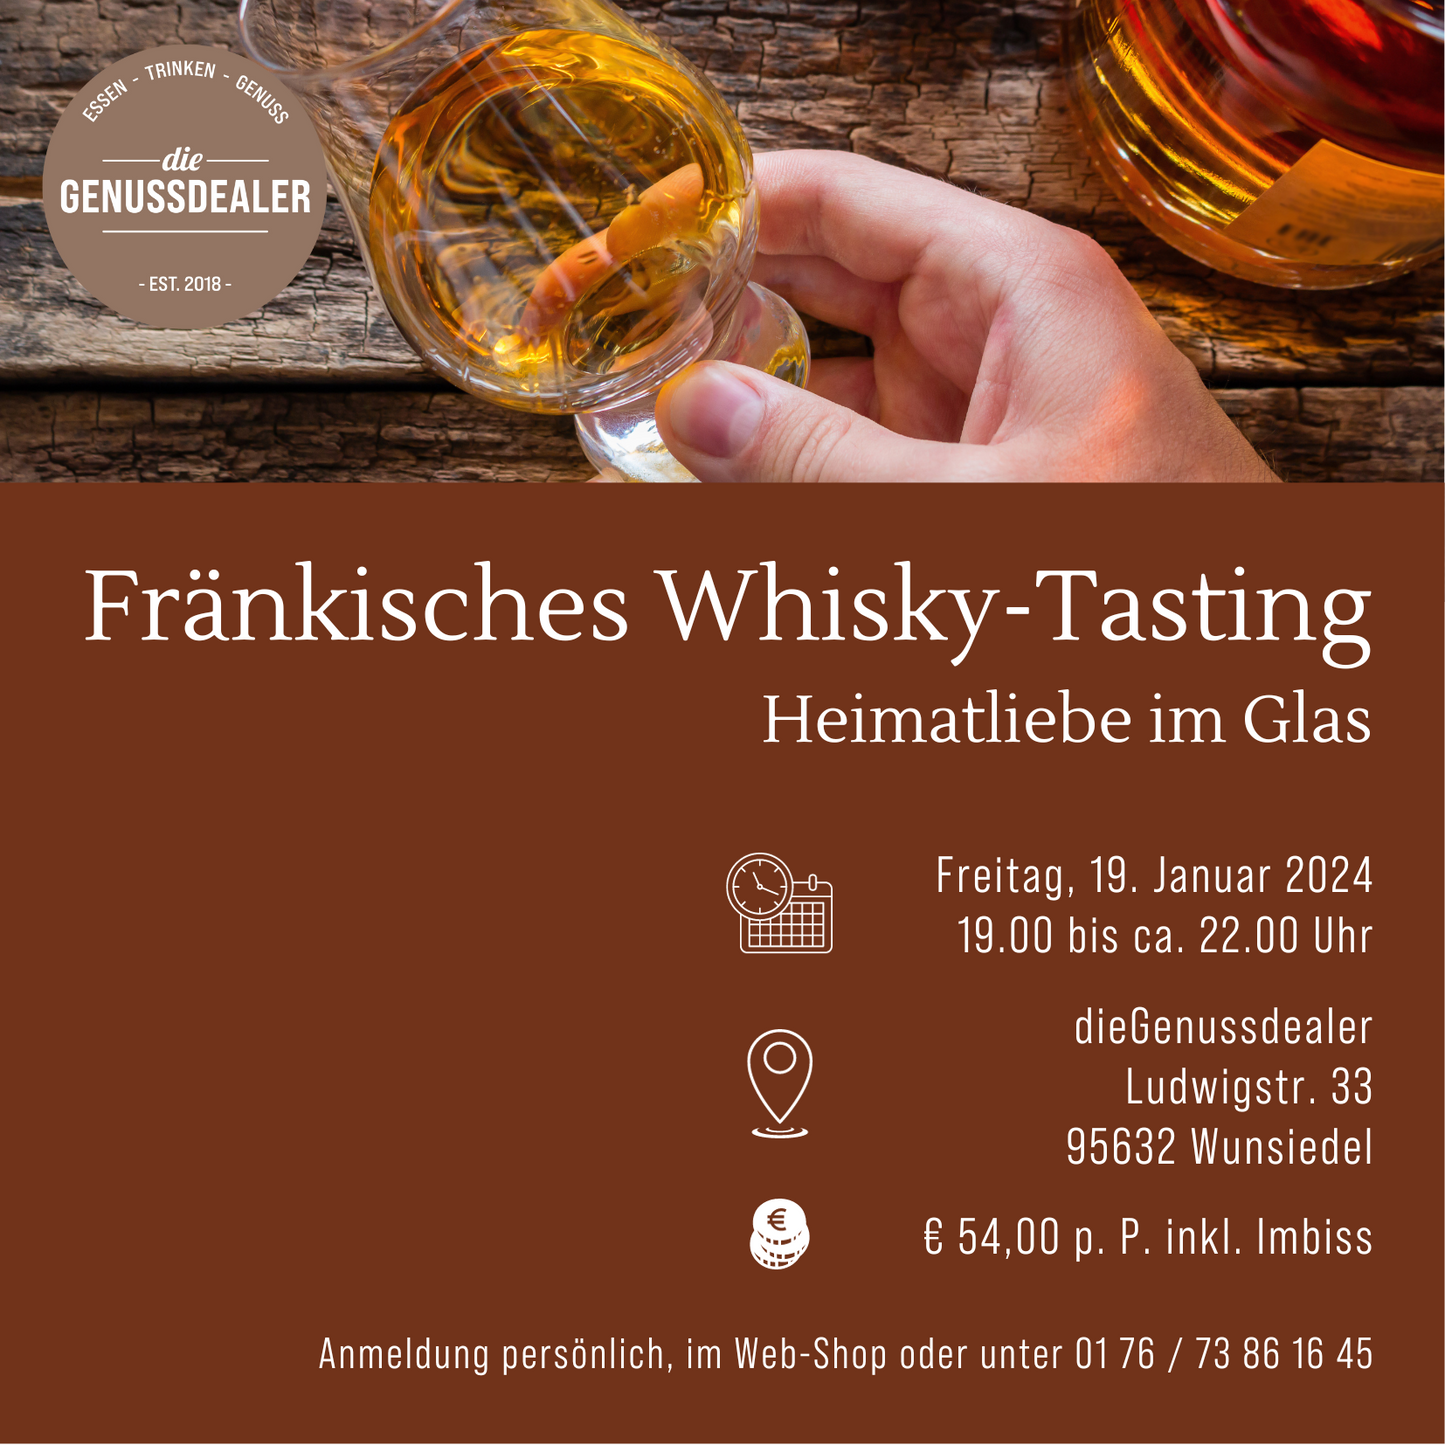 Fränkisches Whisky-Tasting am 19.01.24